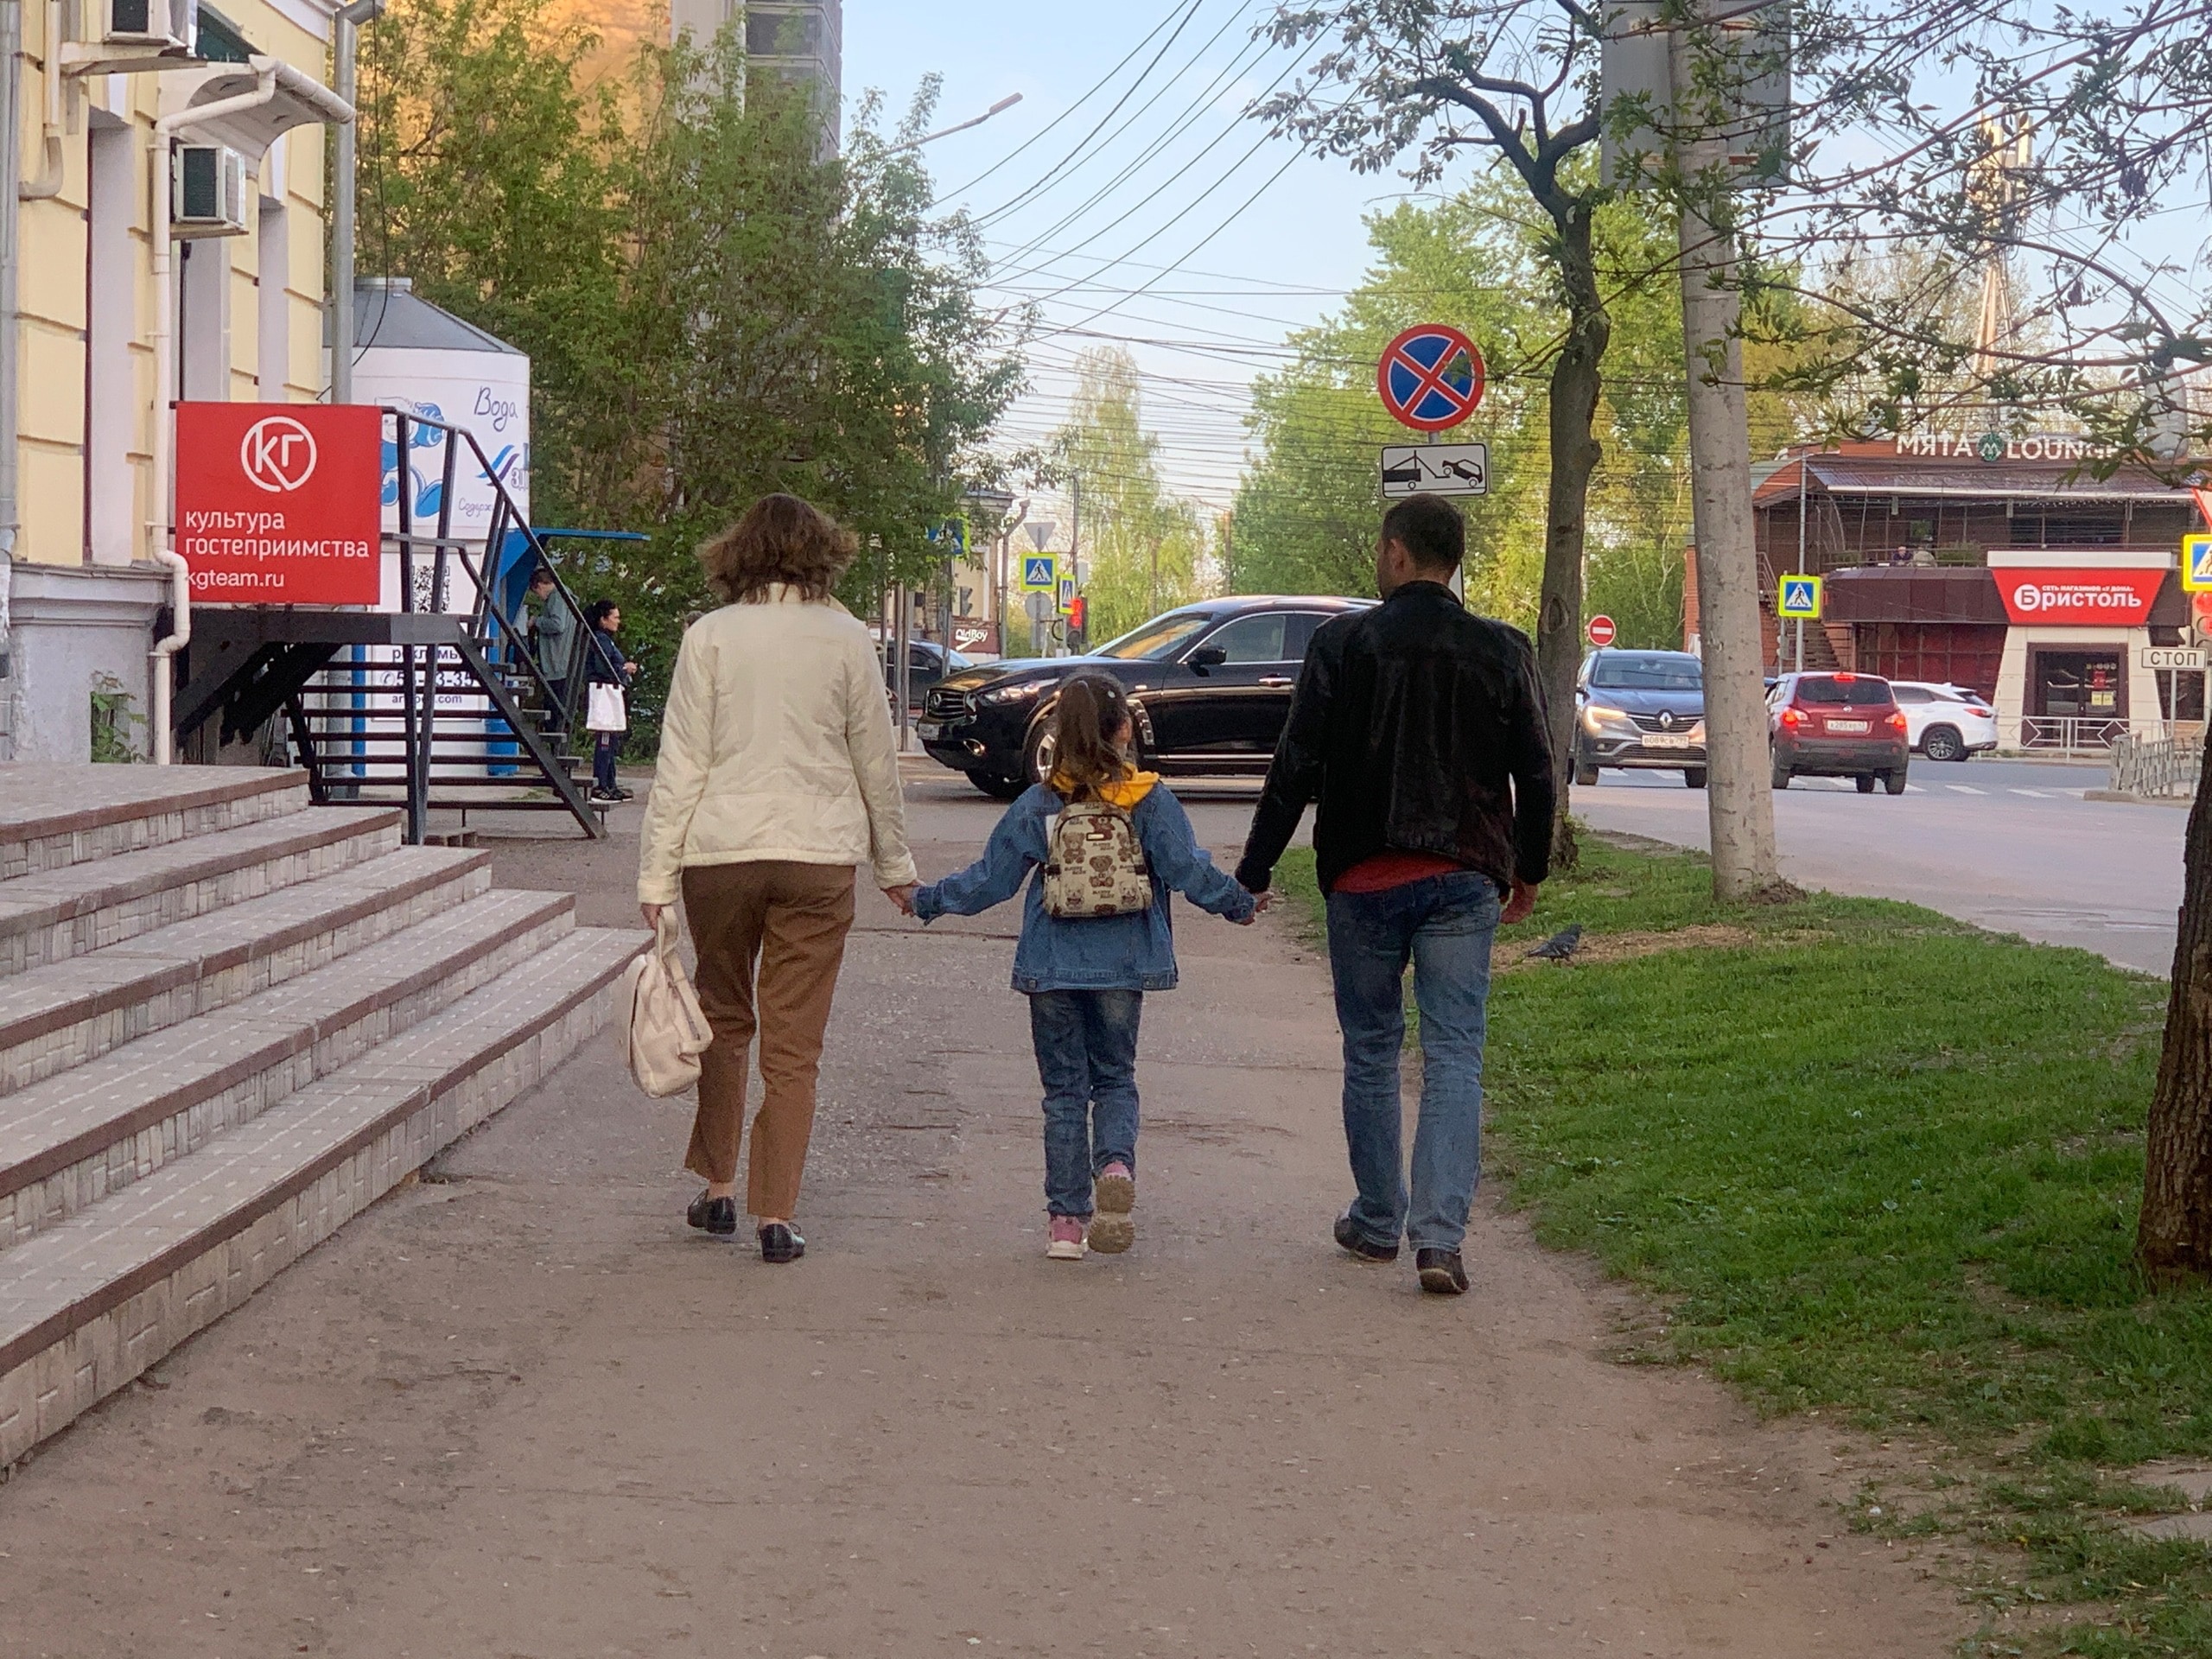 5,4% кировчан в ближайшем году собираются создать семью, 6,1% — завести детей